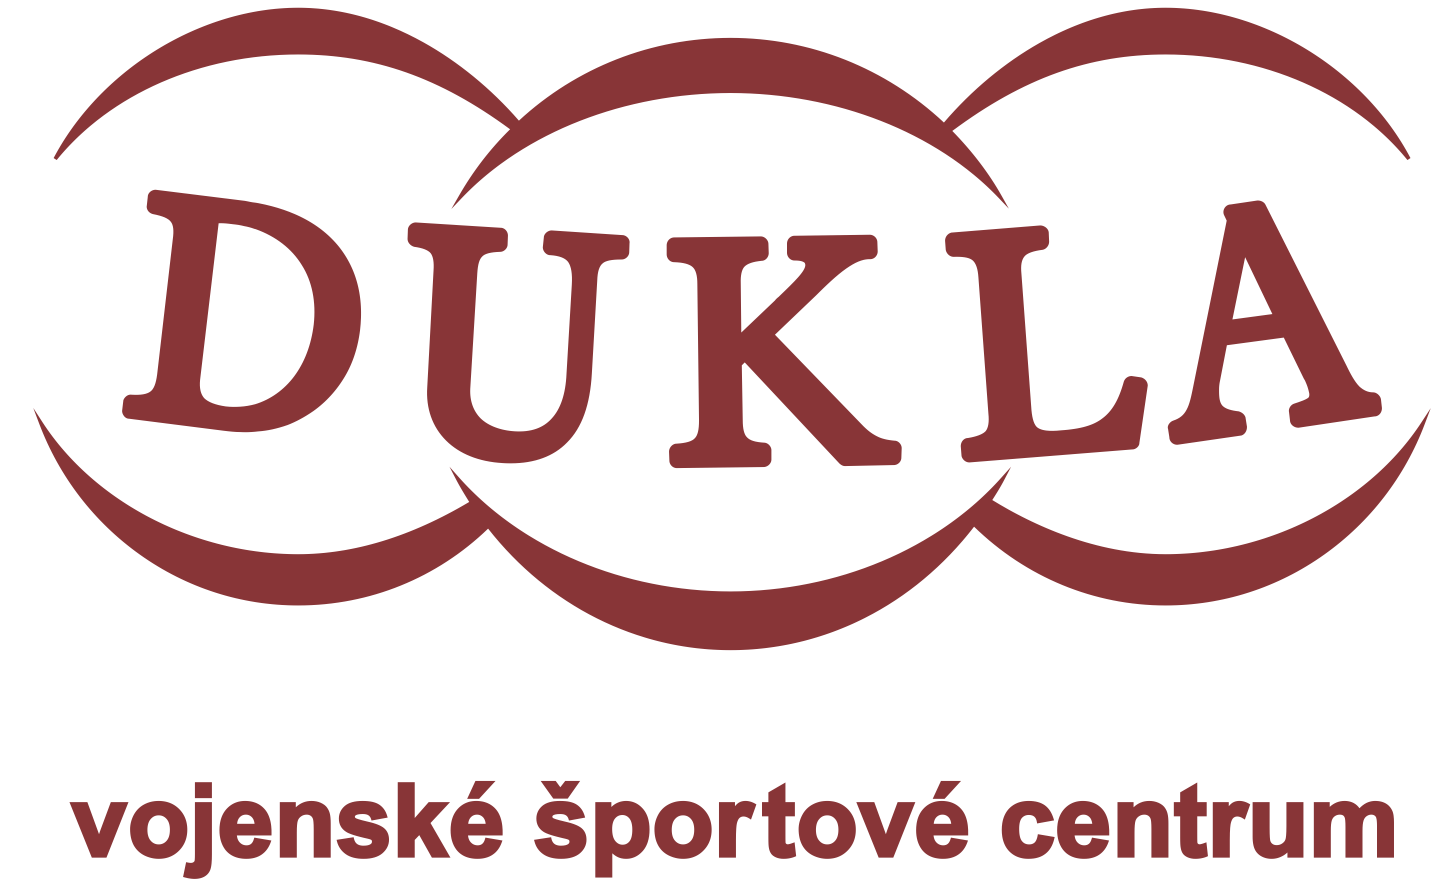 DUKLA logo